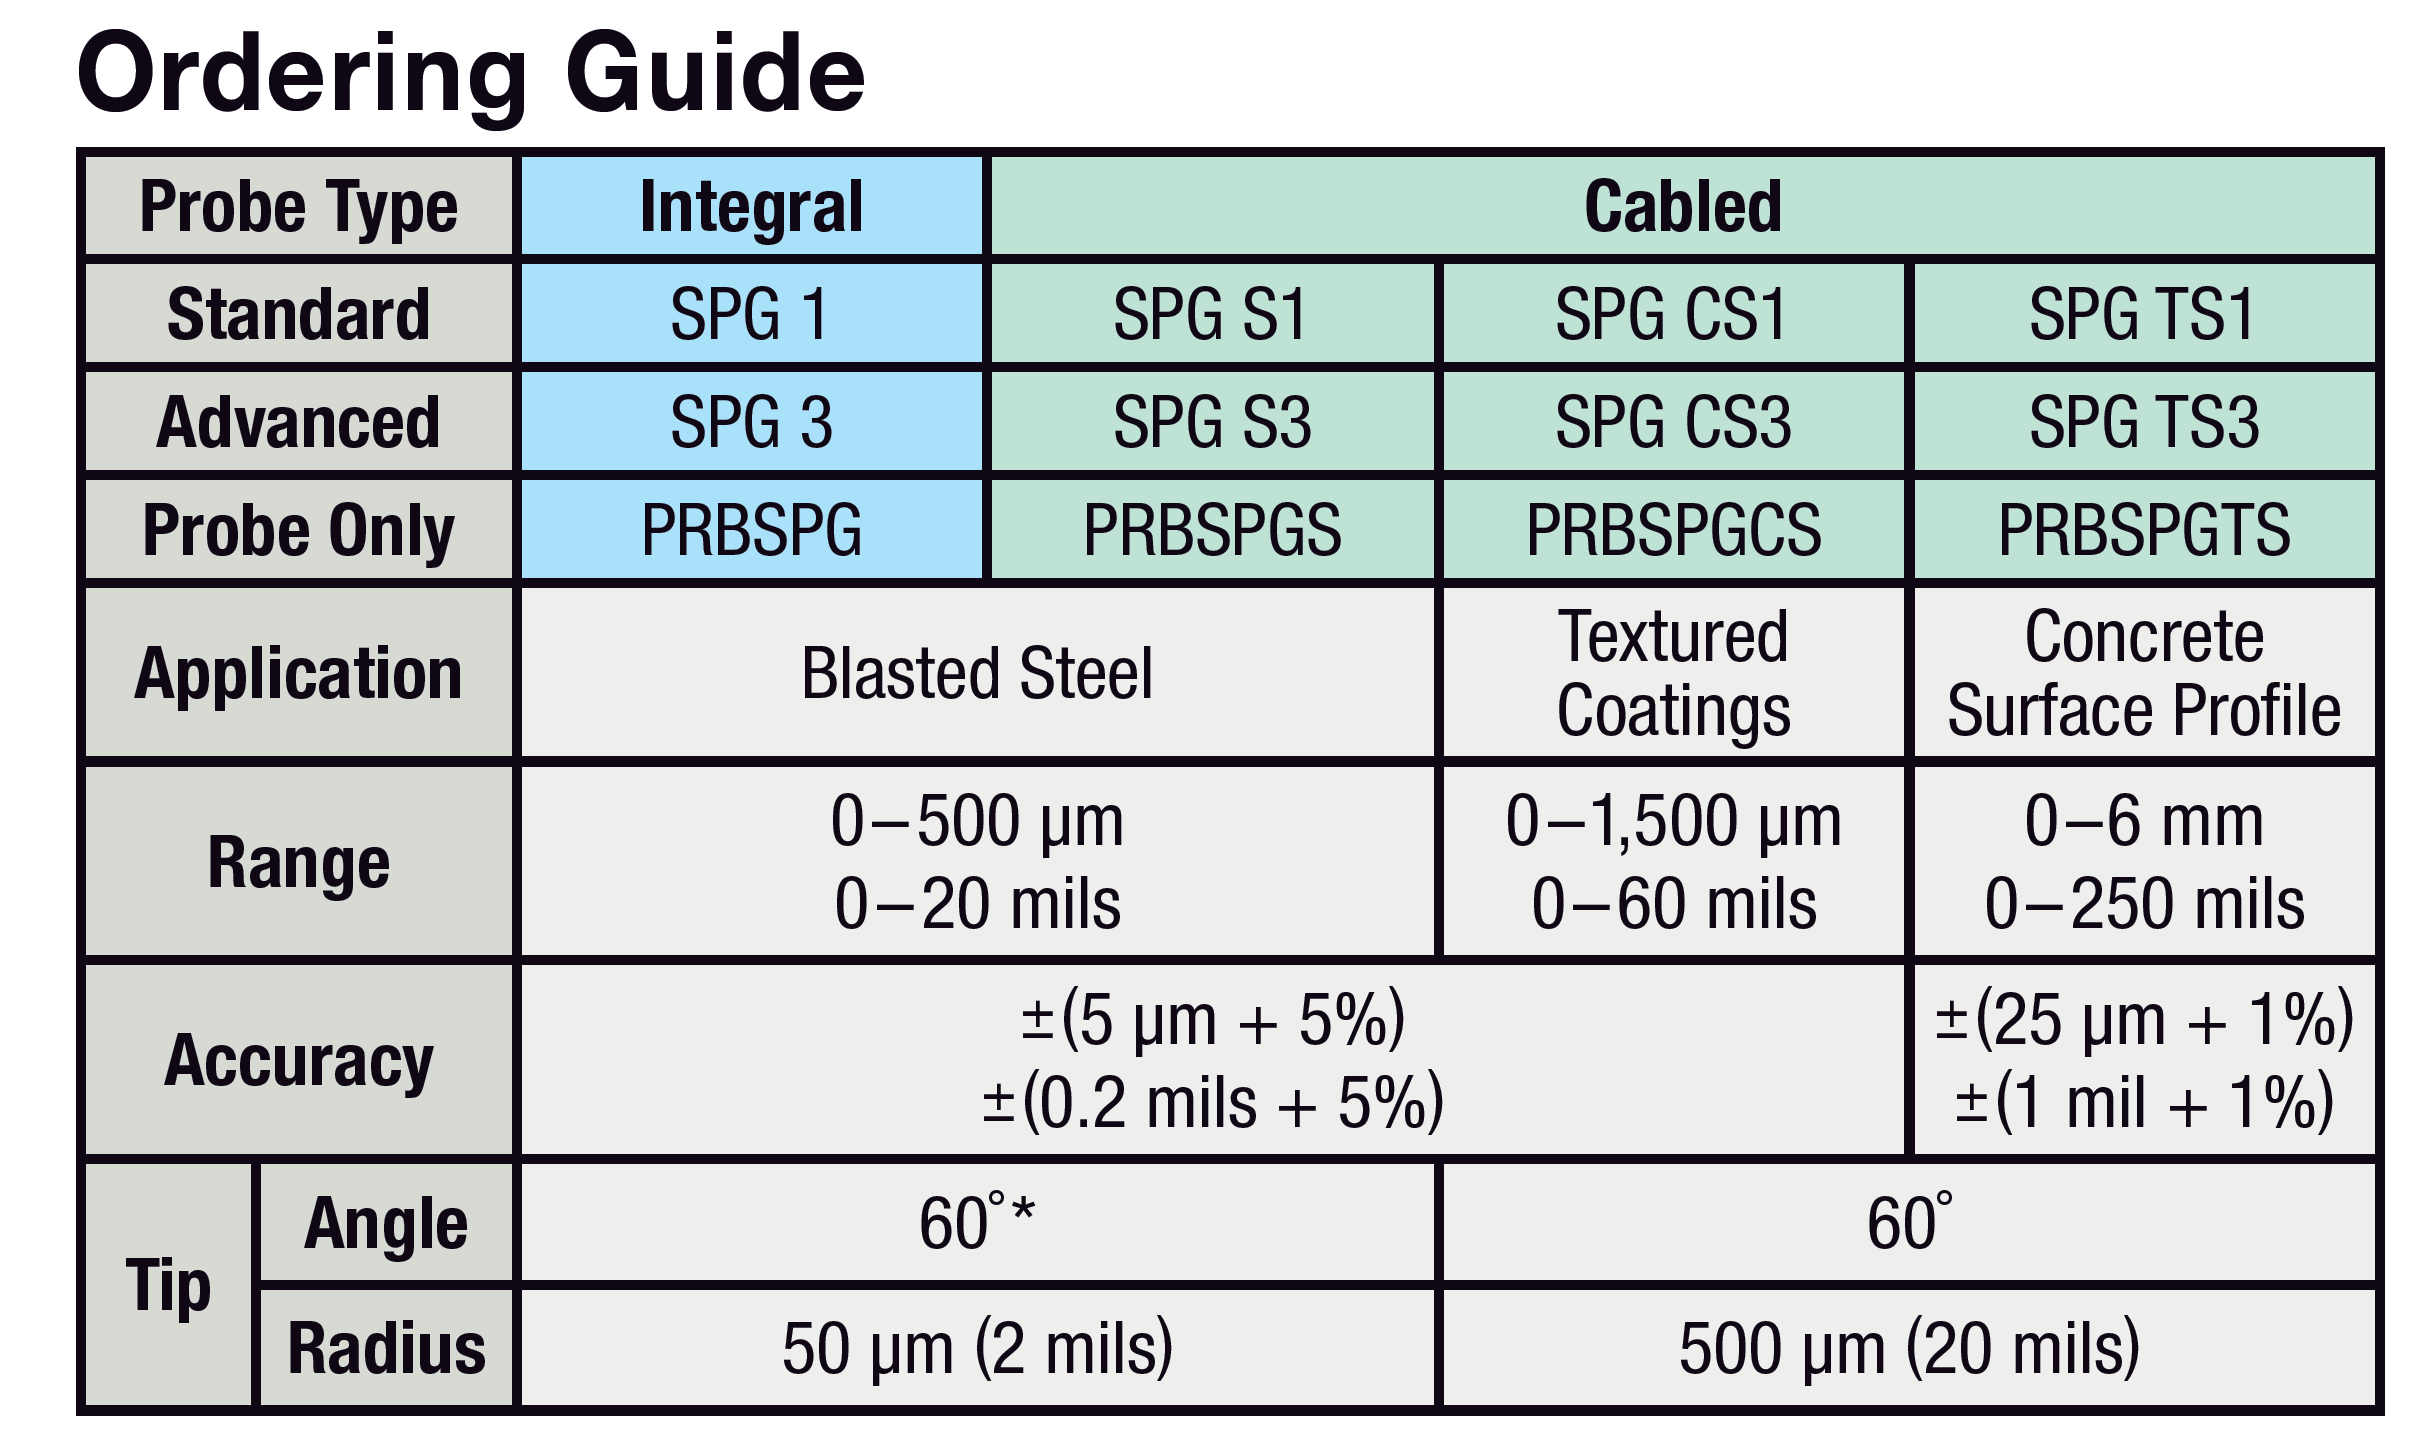 SPG order guide